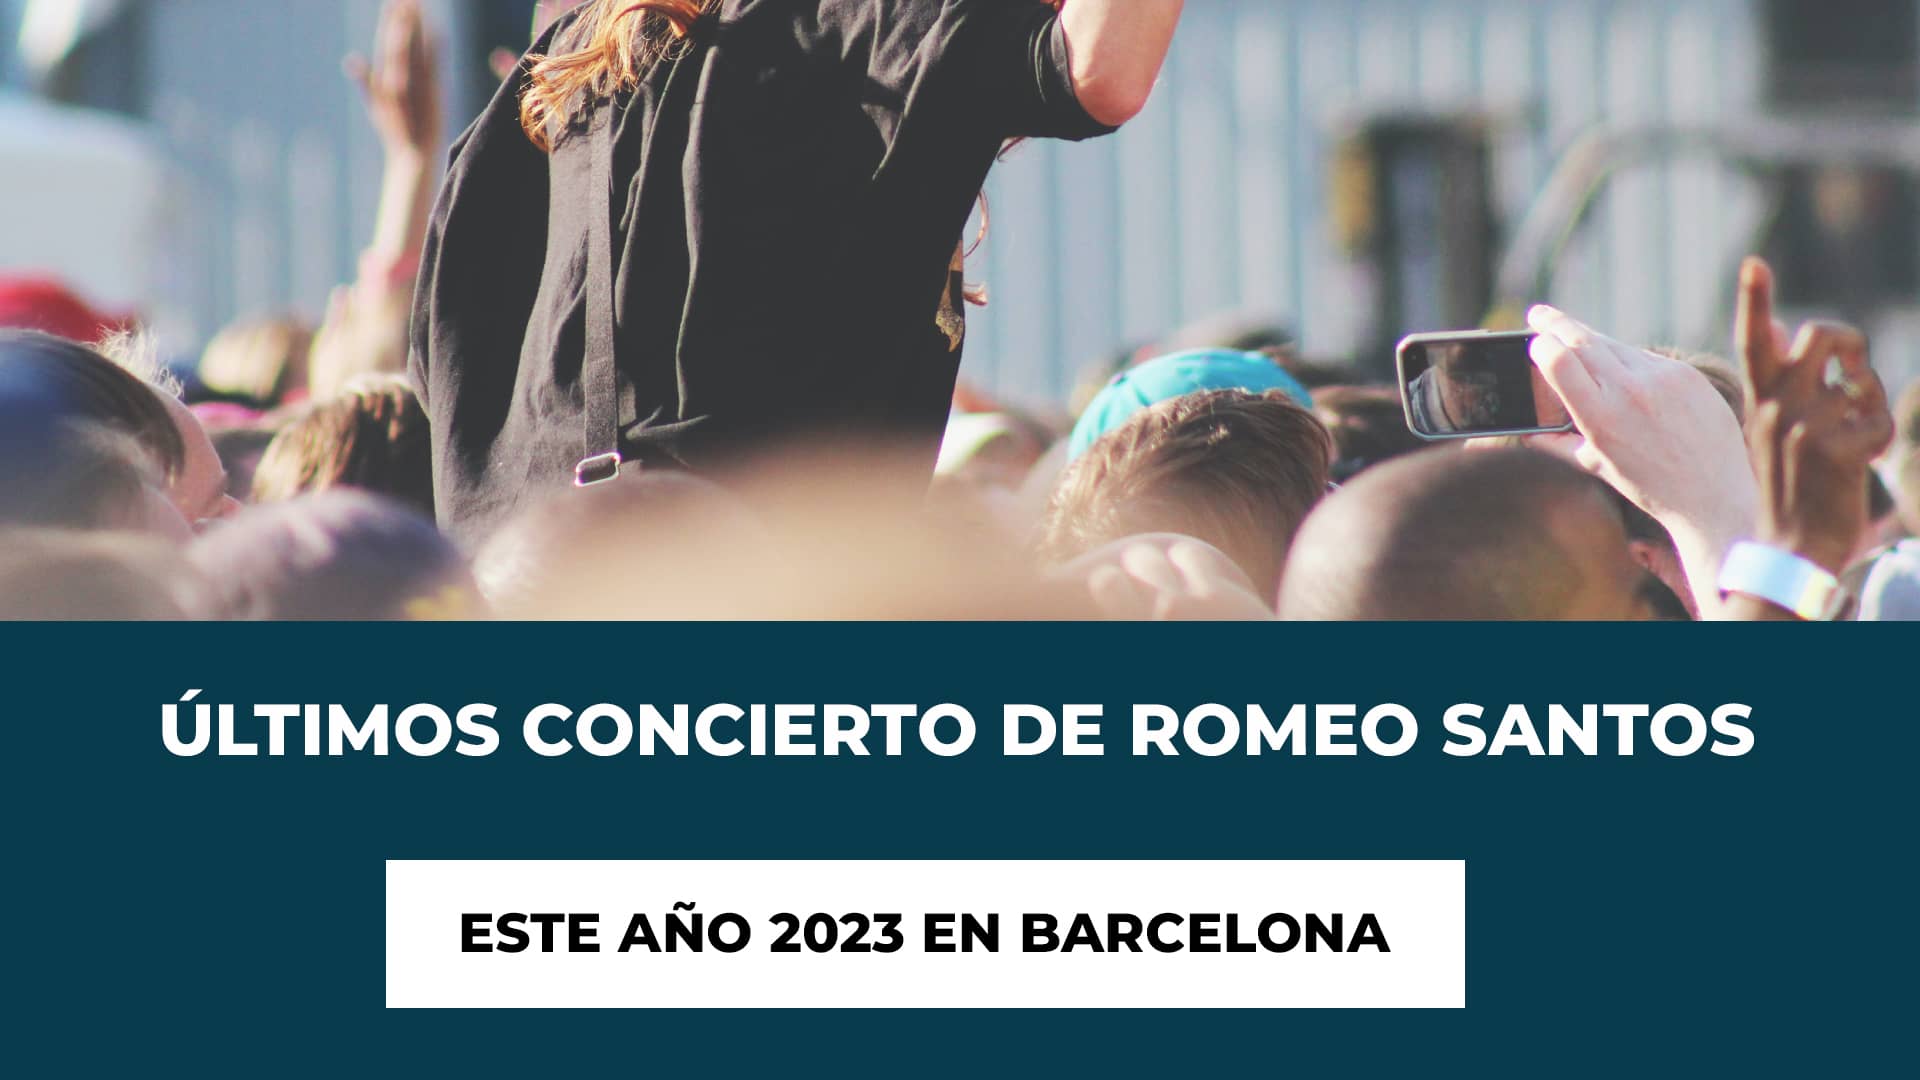 Últimos Concierto de Romeo Santos este año 2023 en Barcelona - Fecha - Recinto - Horario - Entradas - Restricciones de Edad - Precio